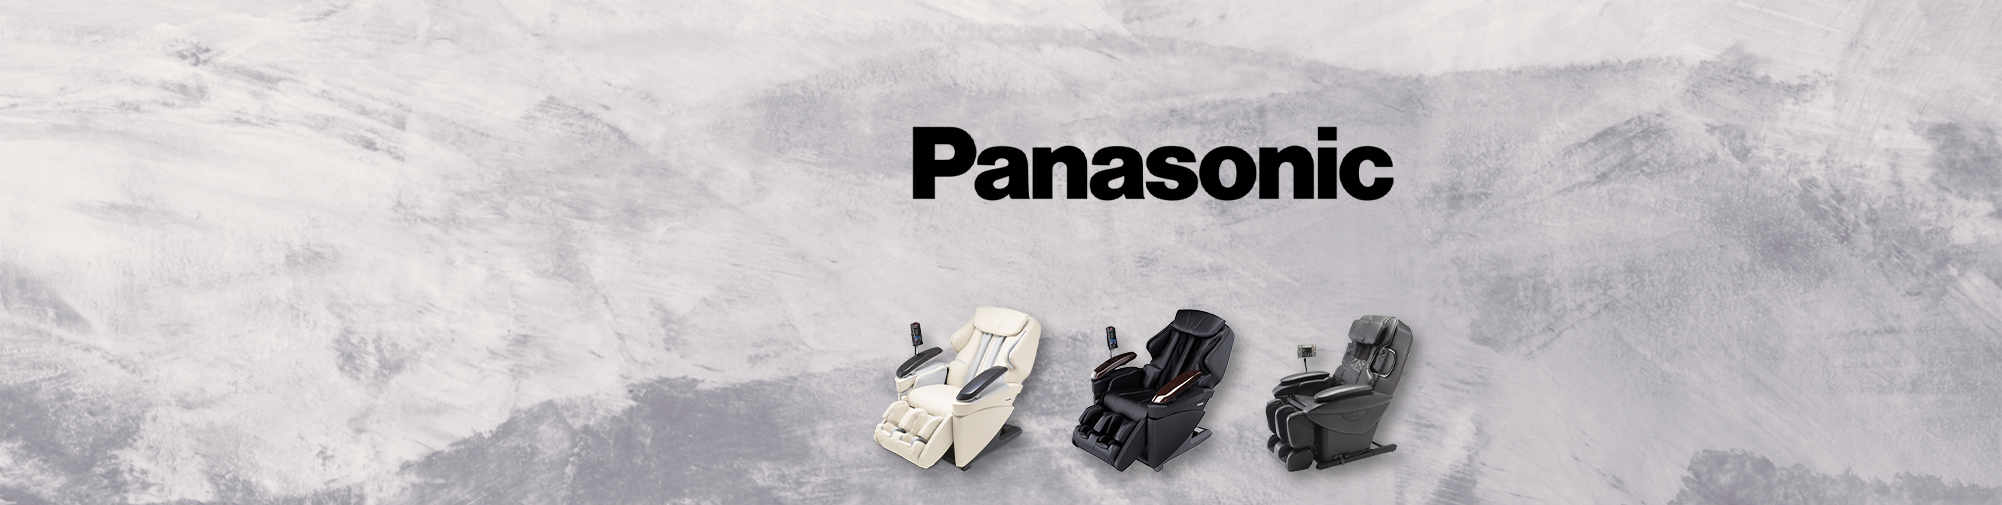 Panasonic Massage Chair Mondo delle poltrone massaggianti